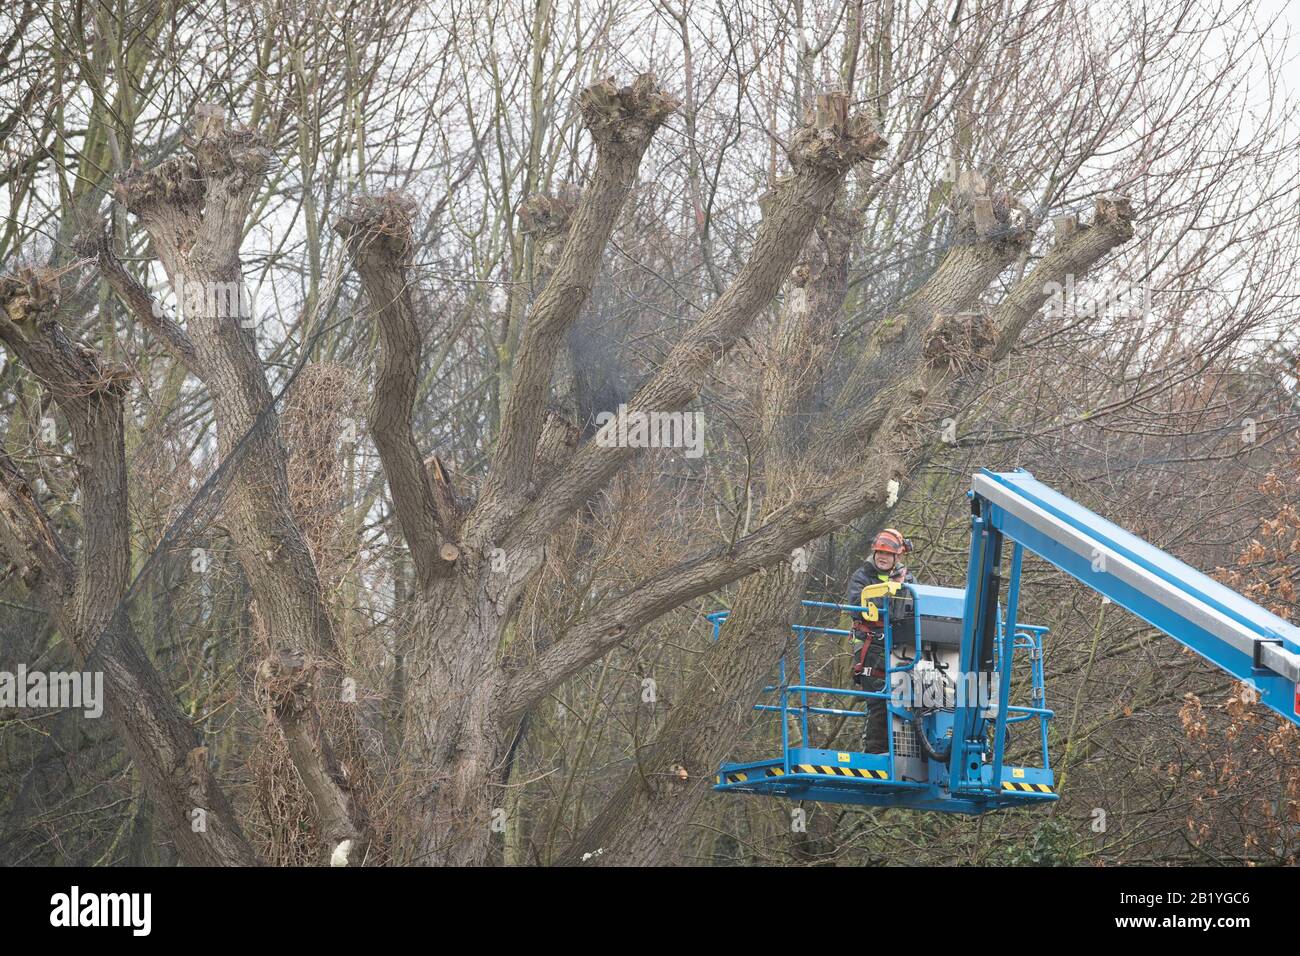 Una persona in un boom lift lavora su alberi vicino al Whittle Laboratory sul campus ovest della Cambridge University che hanno avuto reti messe su di loro per scoraggiare gli uccelli dal nidificare. Foto Stock